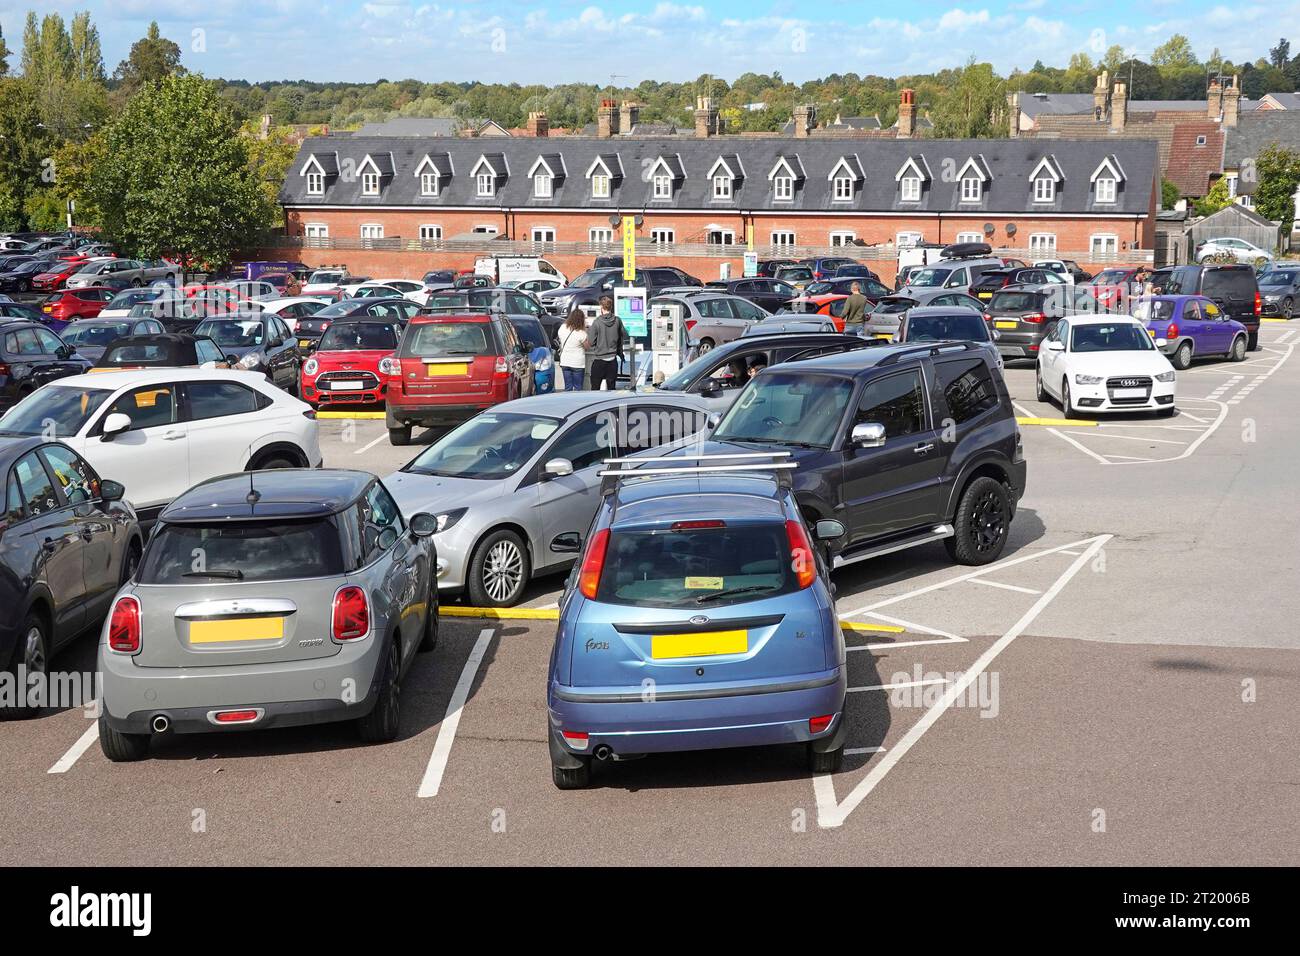 Öffentlicher Parkplatz neben dem Busbahnhof, städtische Landschaft Bury St Edmunds Suffolk England Großbritannien Stockfoto